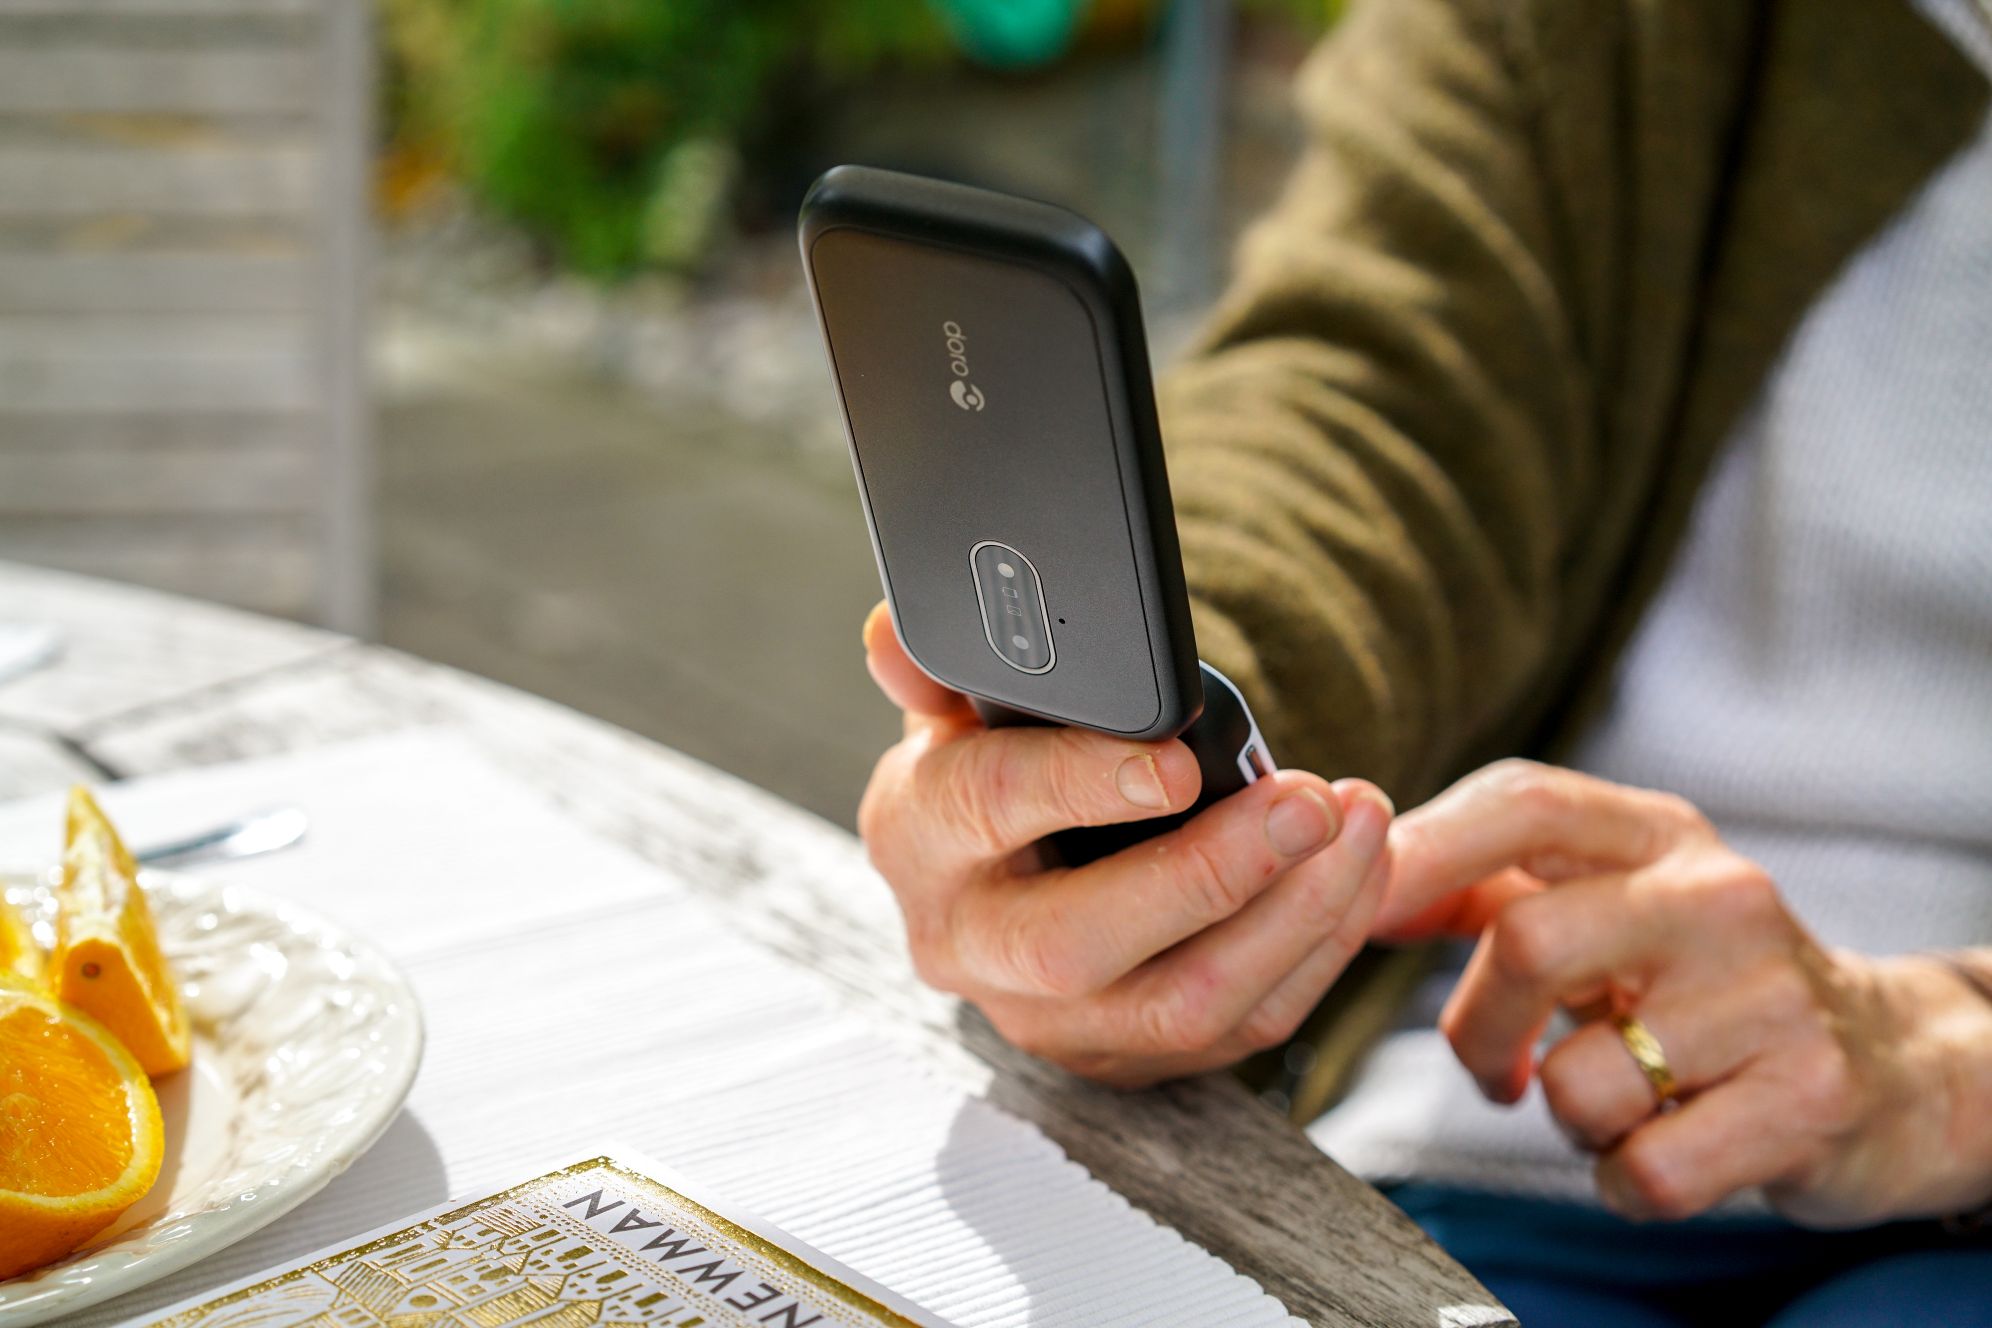 Доро представляет четыре функциональных телефона на IFA 2019, предназначенных для улучшения повседневной жизни пожилых пользователей